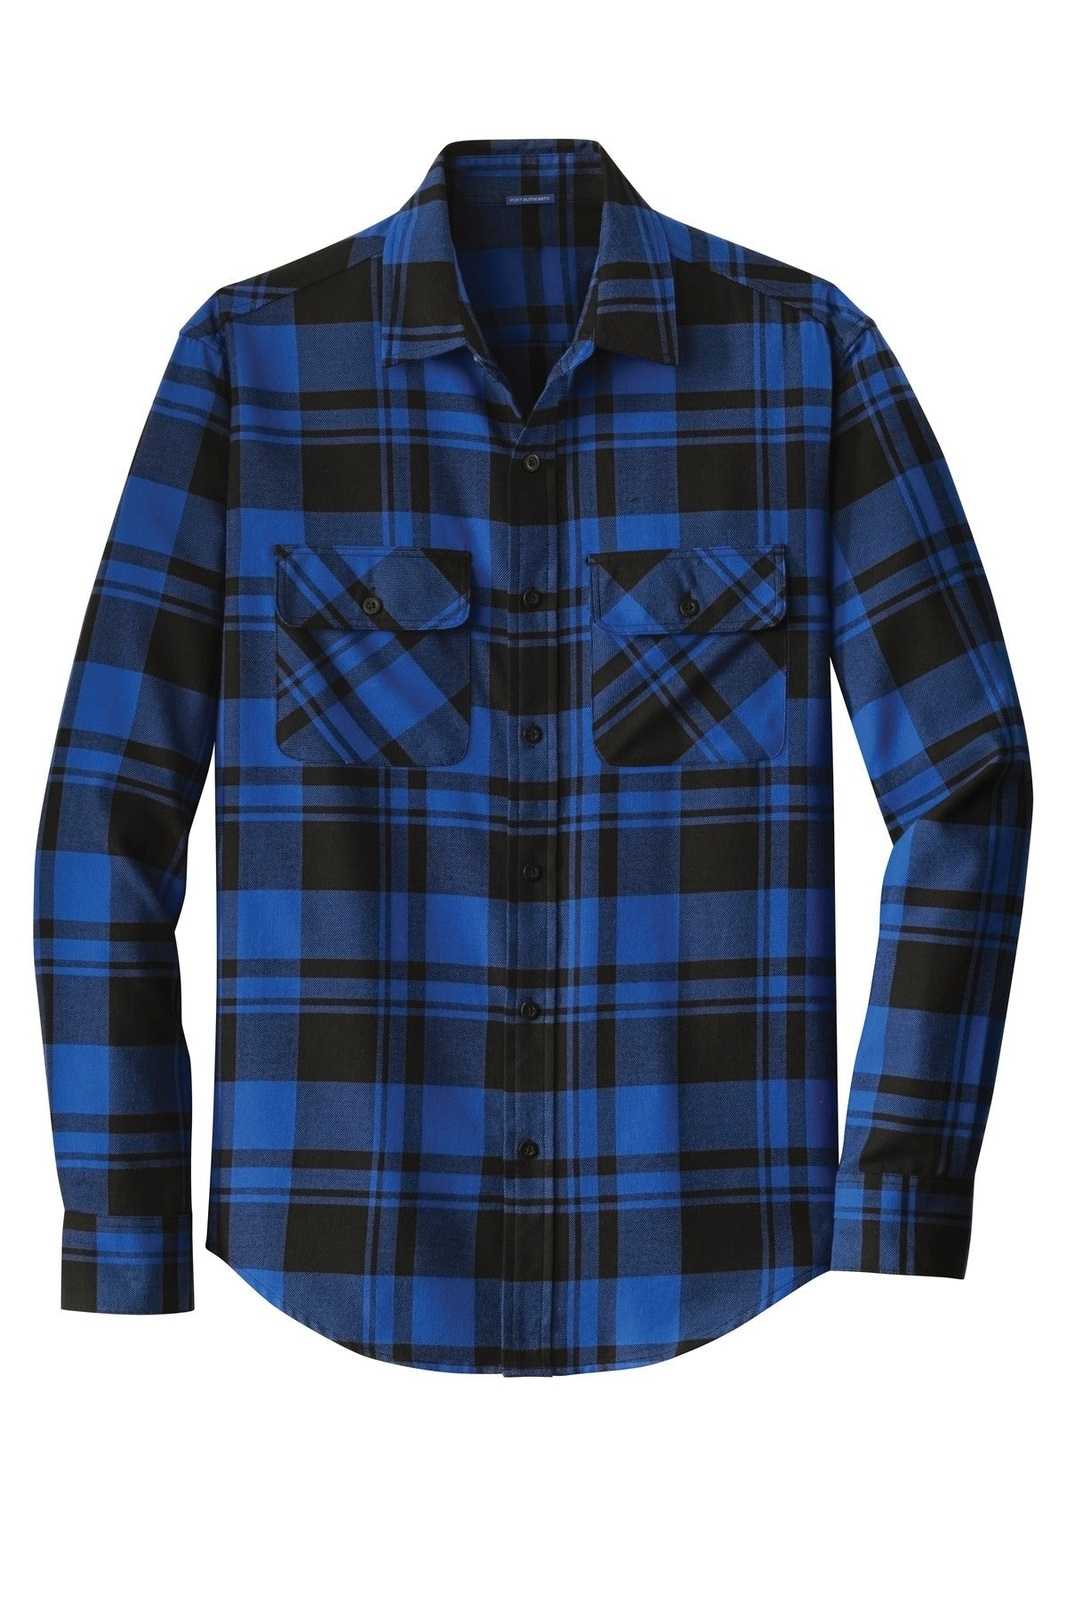 Port Authority W668 Plaid Flannel Shirt - Royal Black - HIT a Double - 5